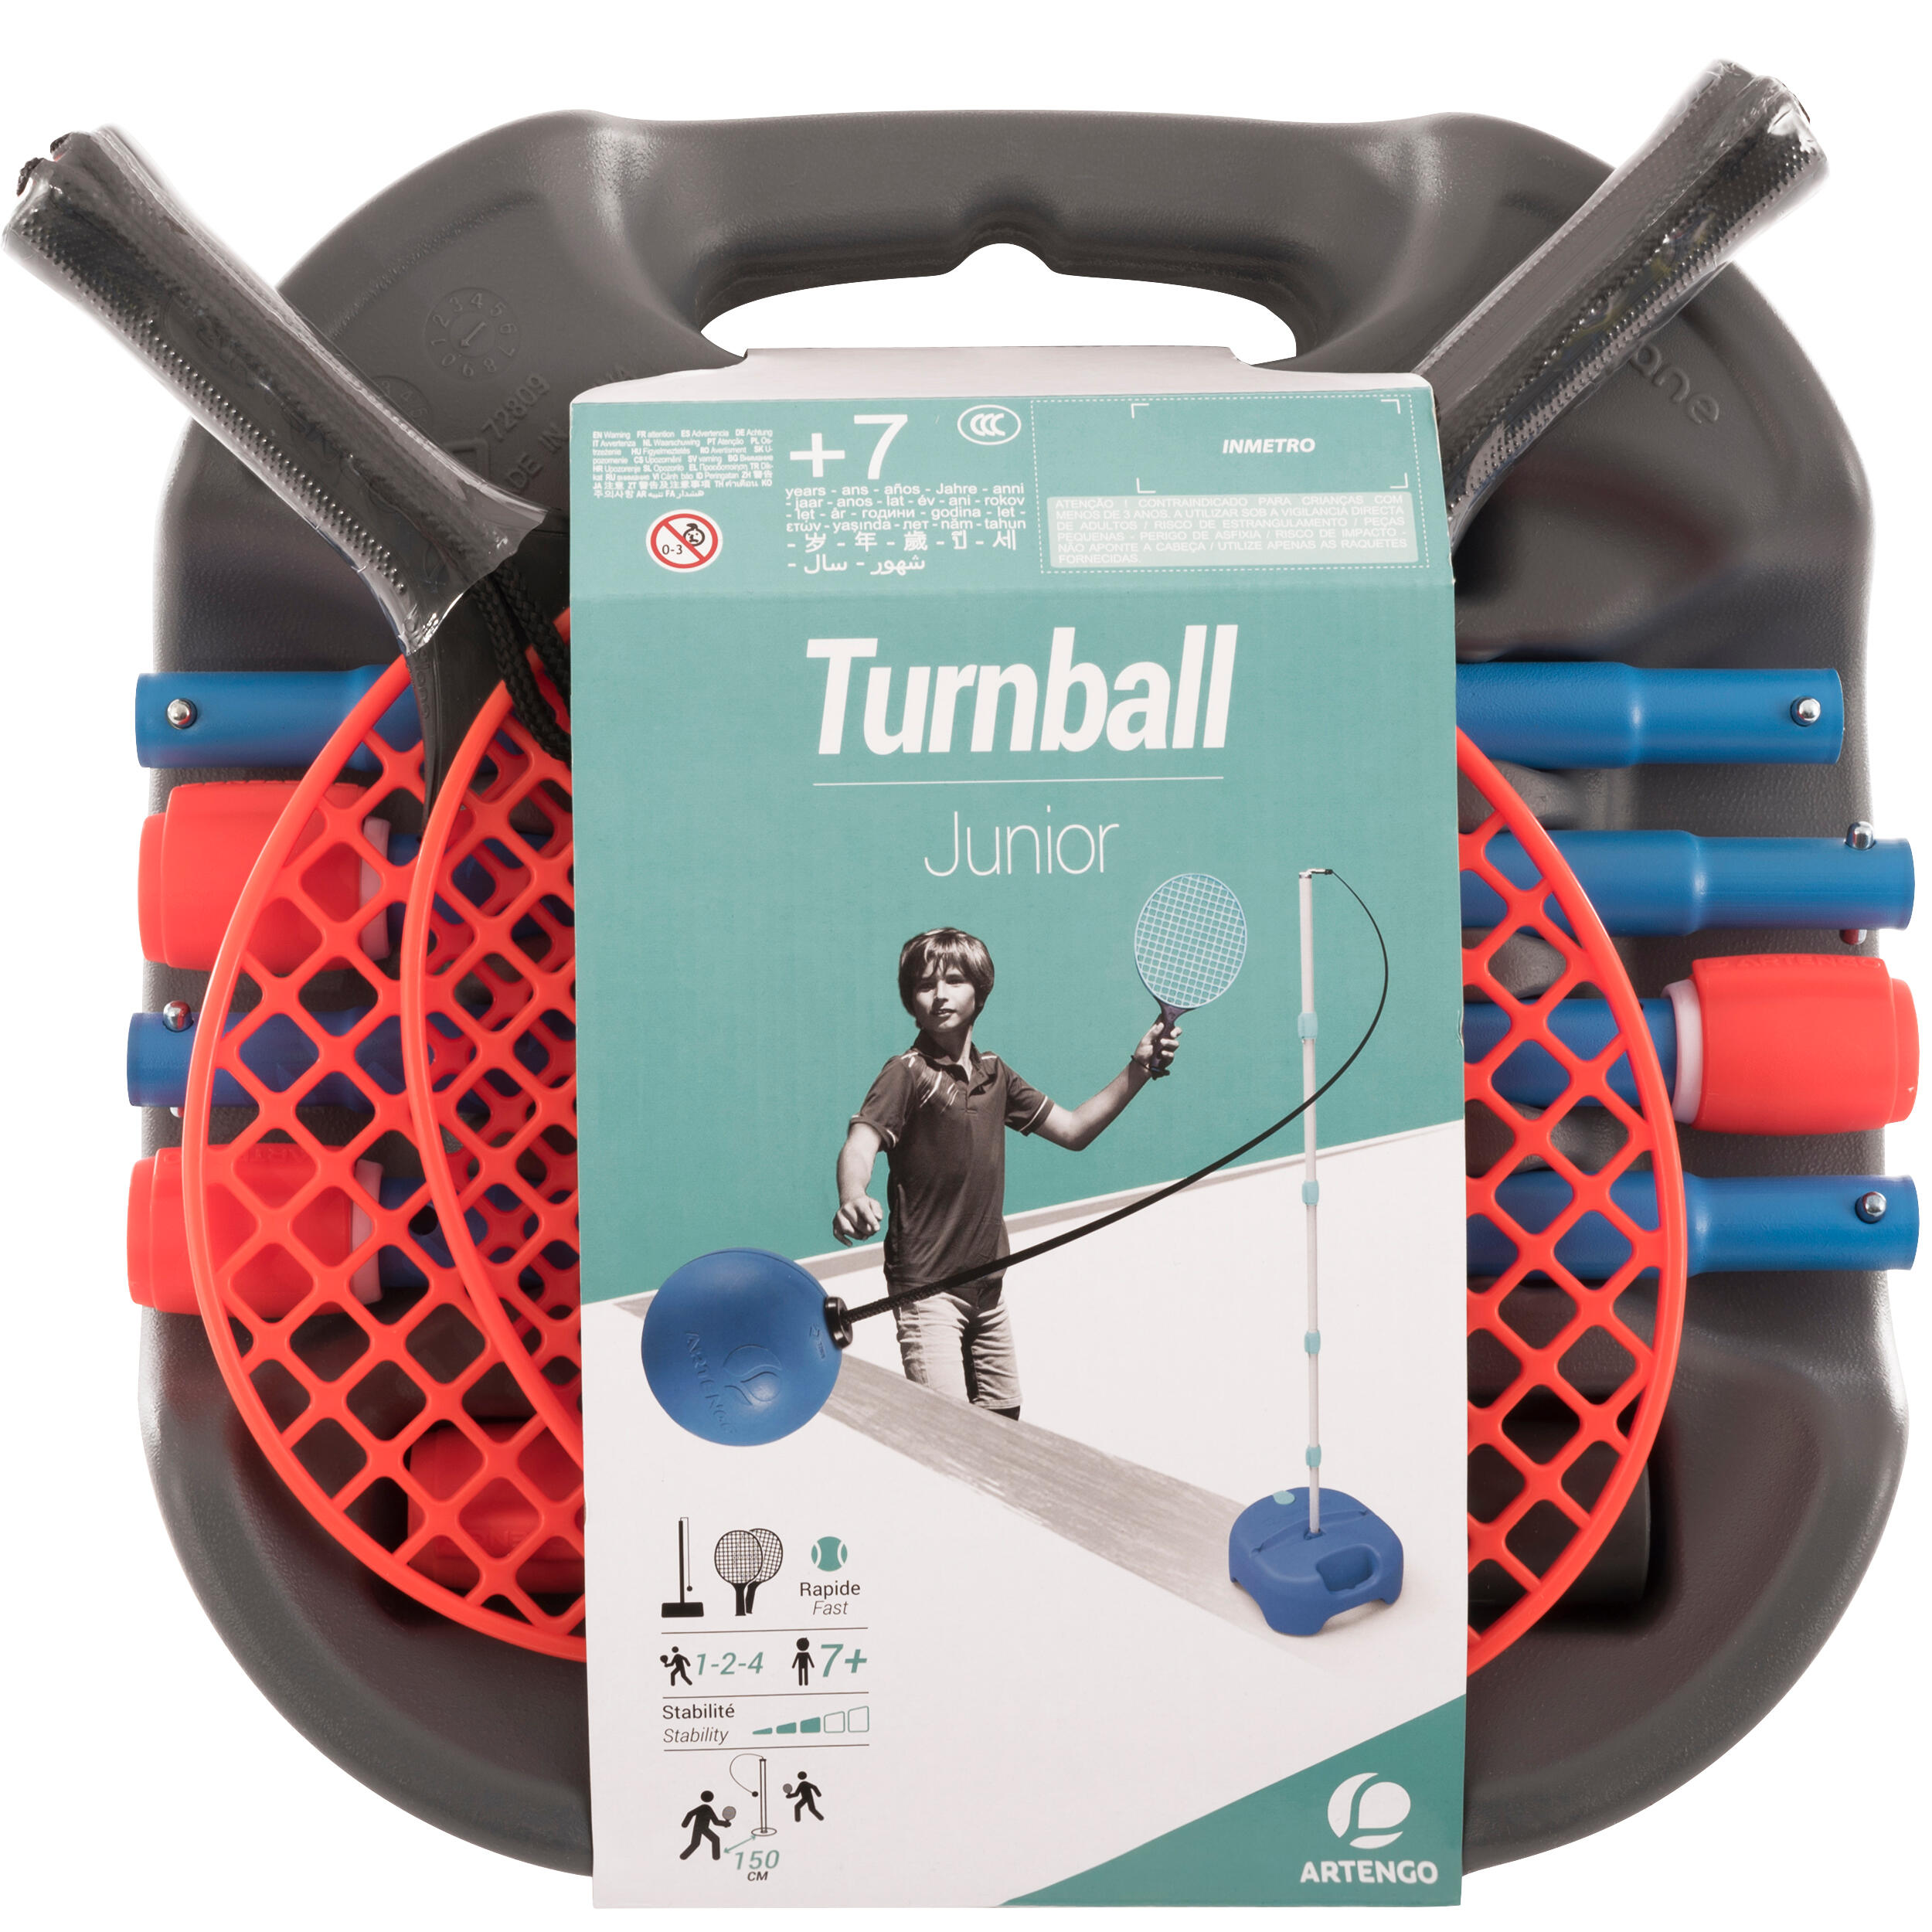 speedball turnball